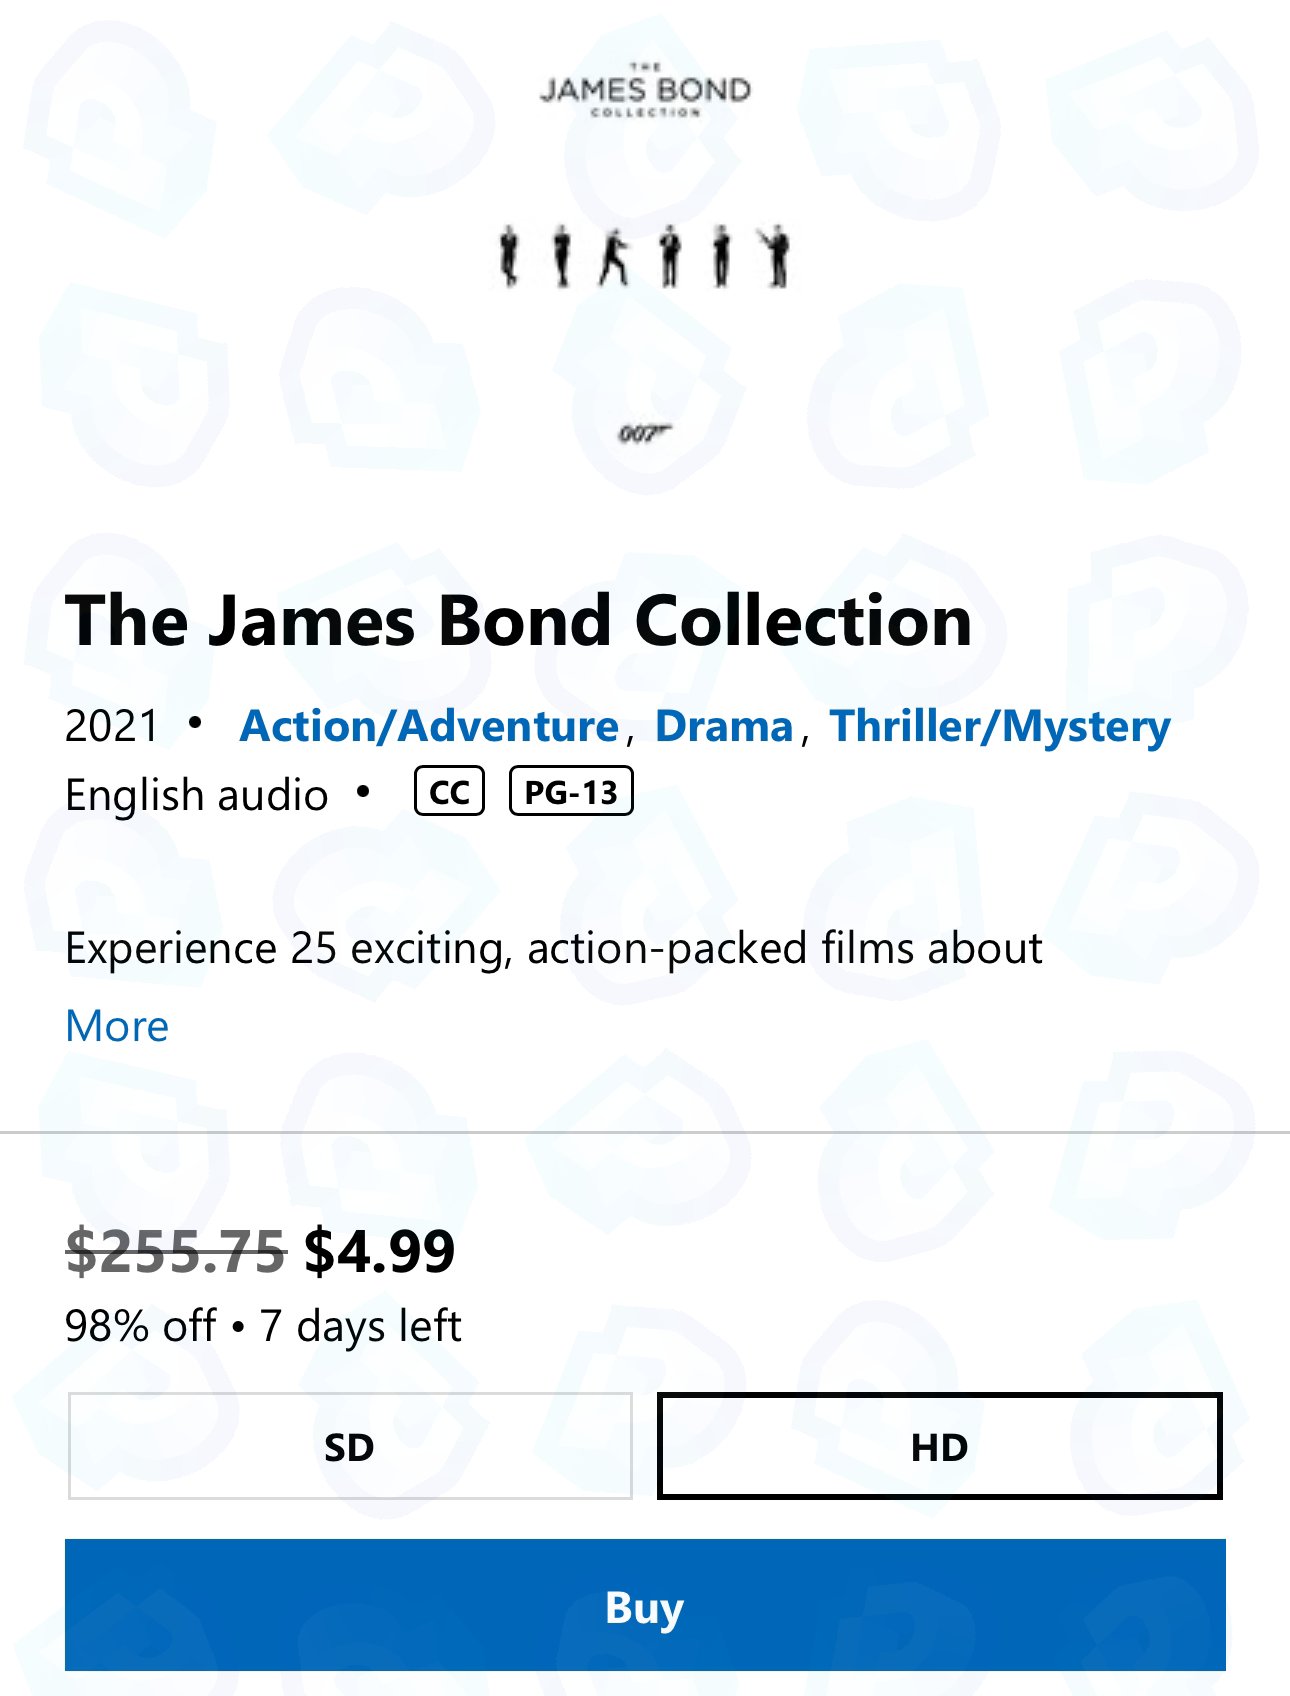 微软商店007电影合集误设折扣价 5美元集齐25部电影  第2张